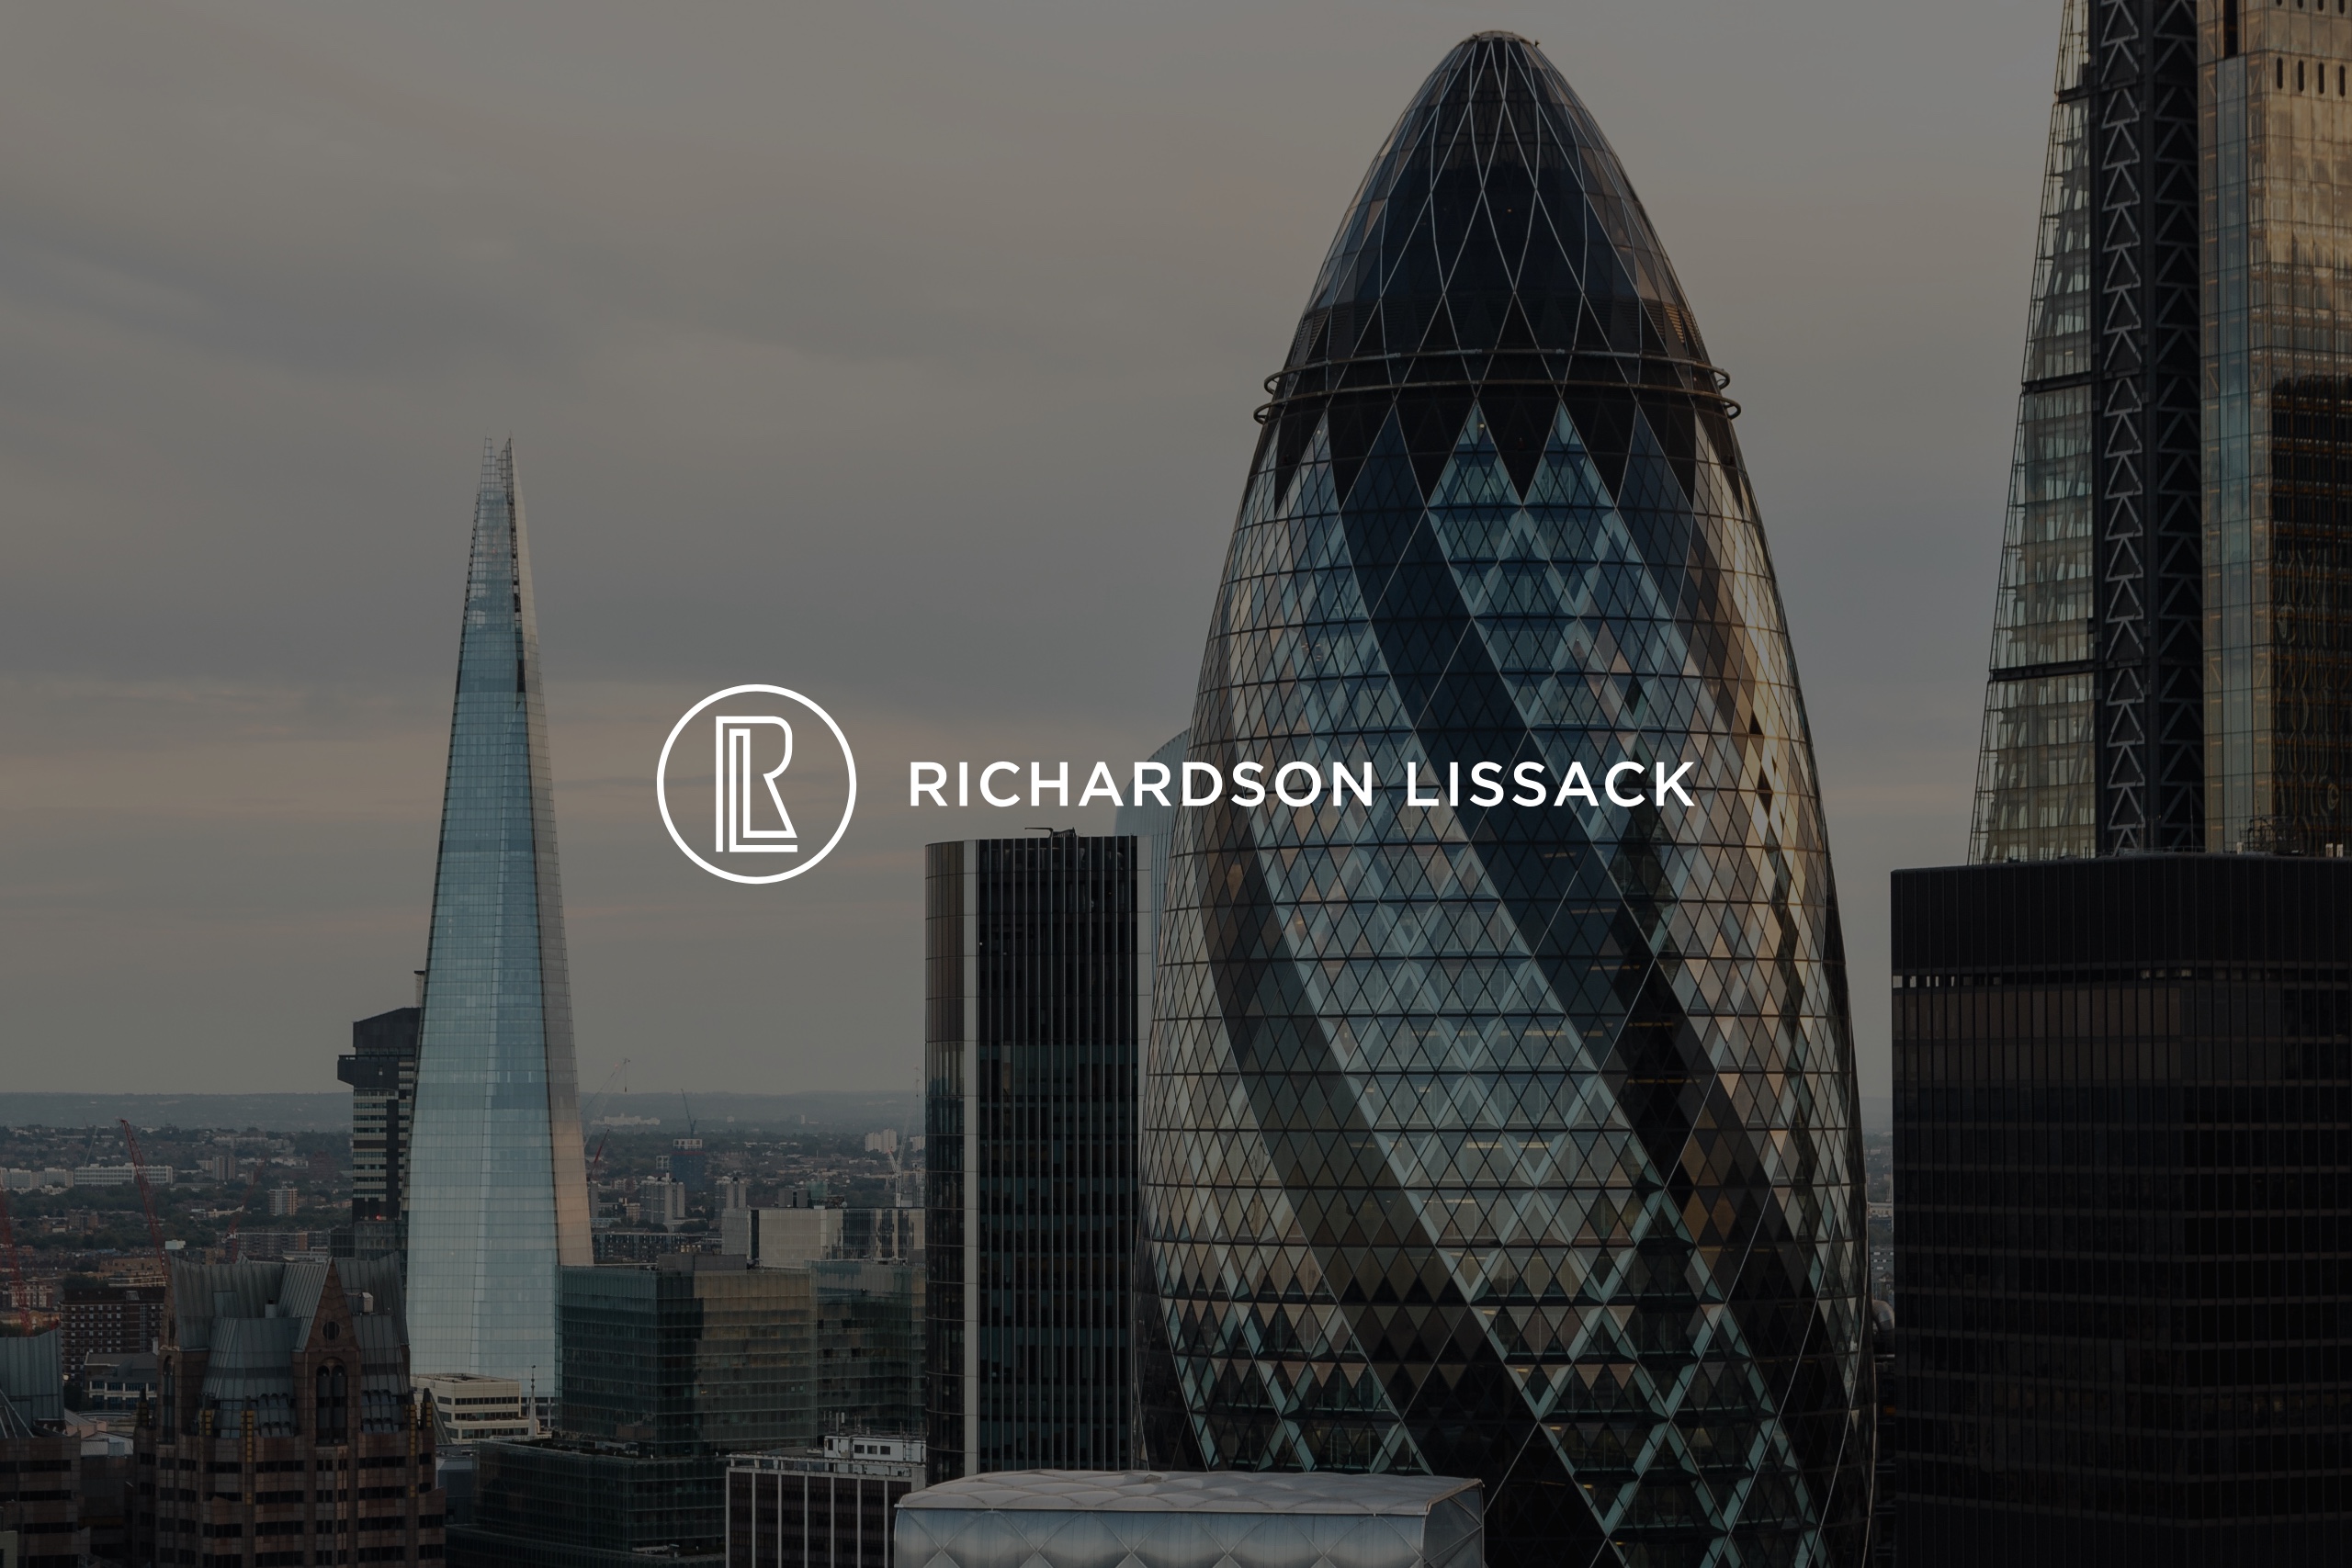 Richardson Lissack corporate identity